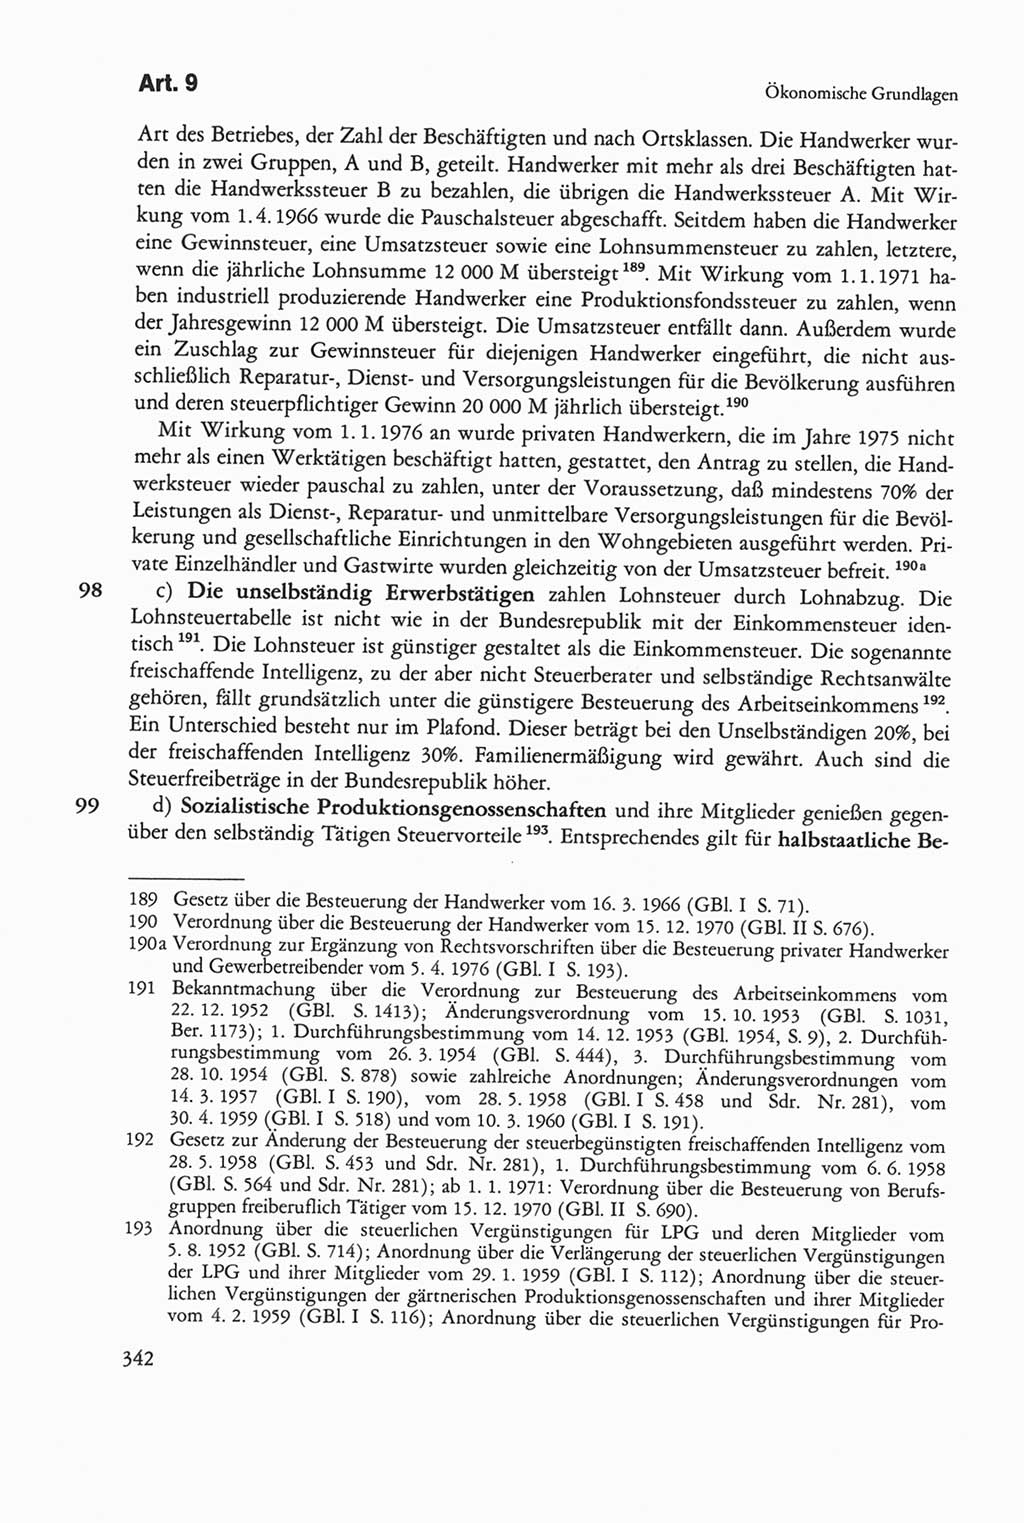 Die sozialistische Verfassung der Deutschen Demokratischen Republik (DDR), Kommentar mit einem Nachtrag 1997, Seite 342 (Soz. Verf. DDR Komm. Nachtr. 1997, S. 342)